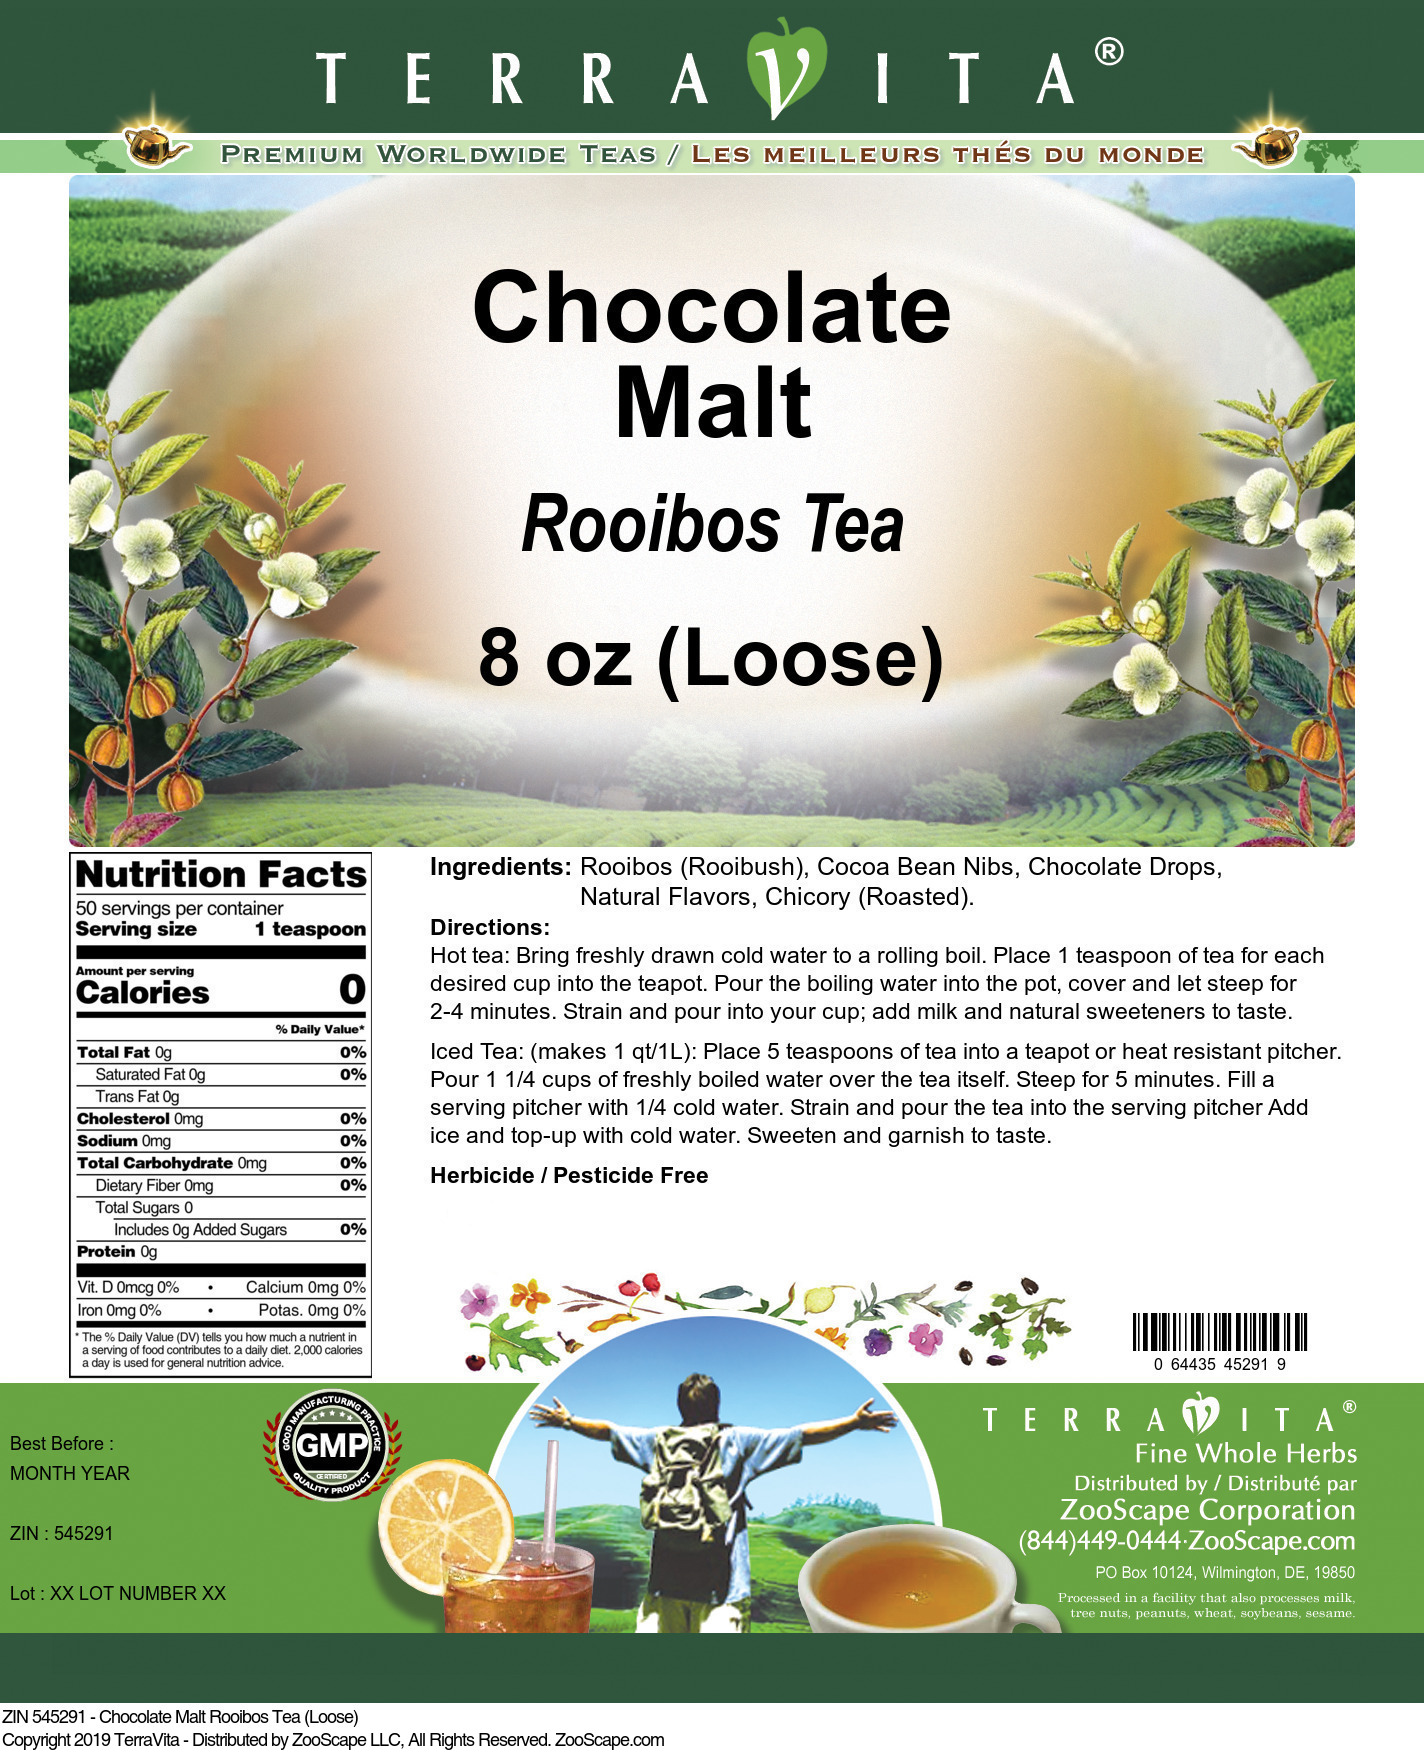 Chocolate Malt Rooibos Tea (Loose) - Label